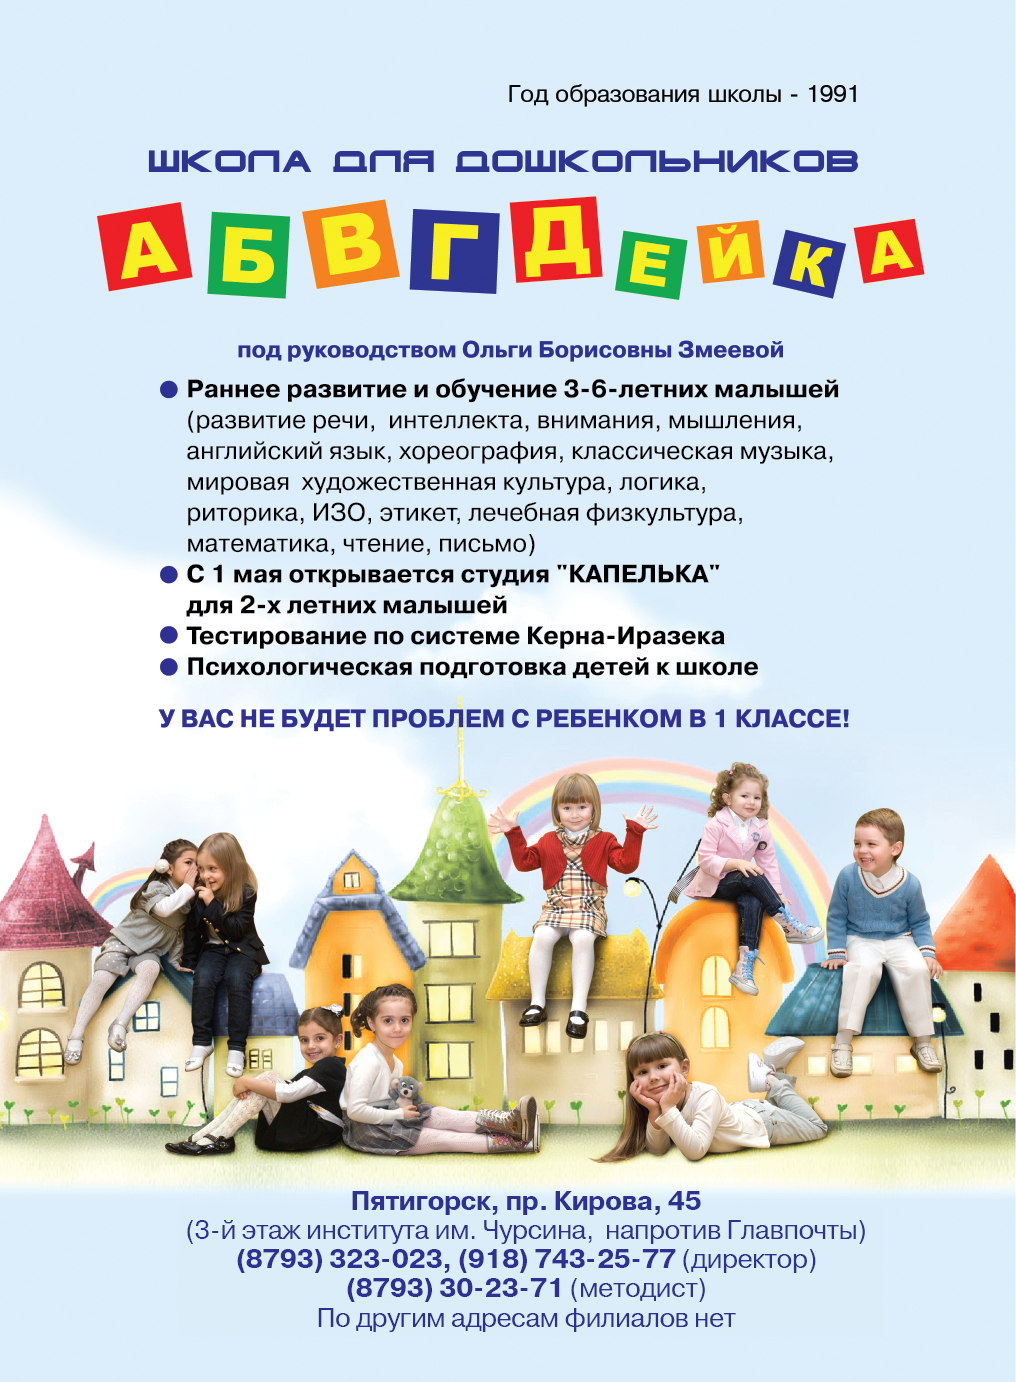 Детский сад "7 гномов" на полдня в Пятигорске